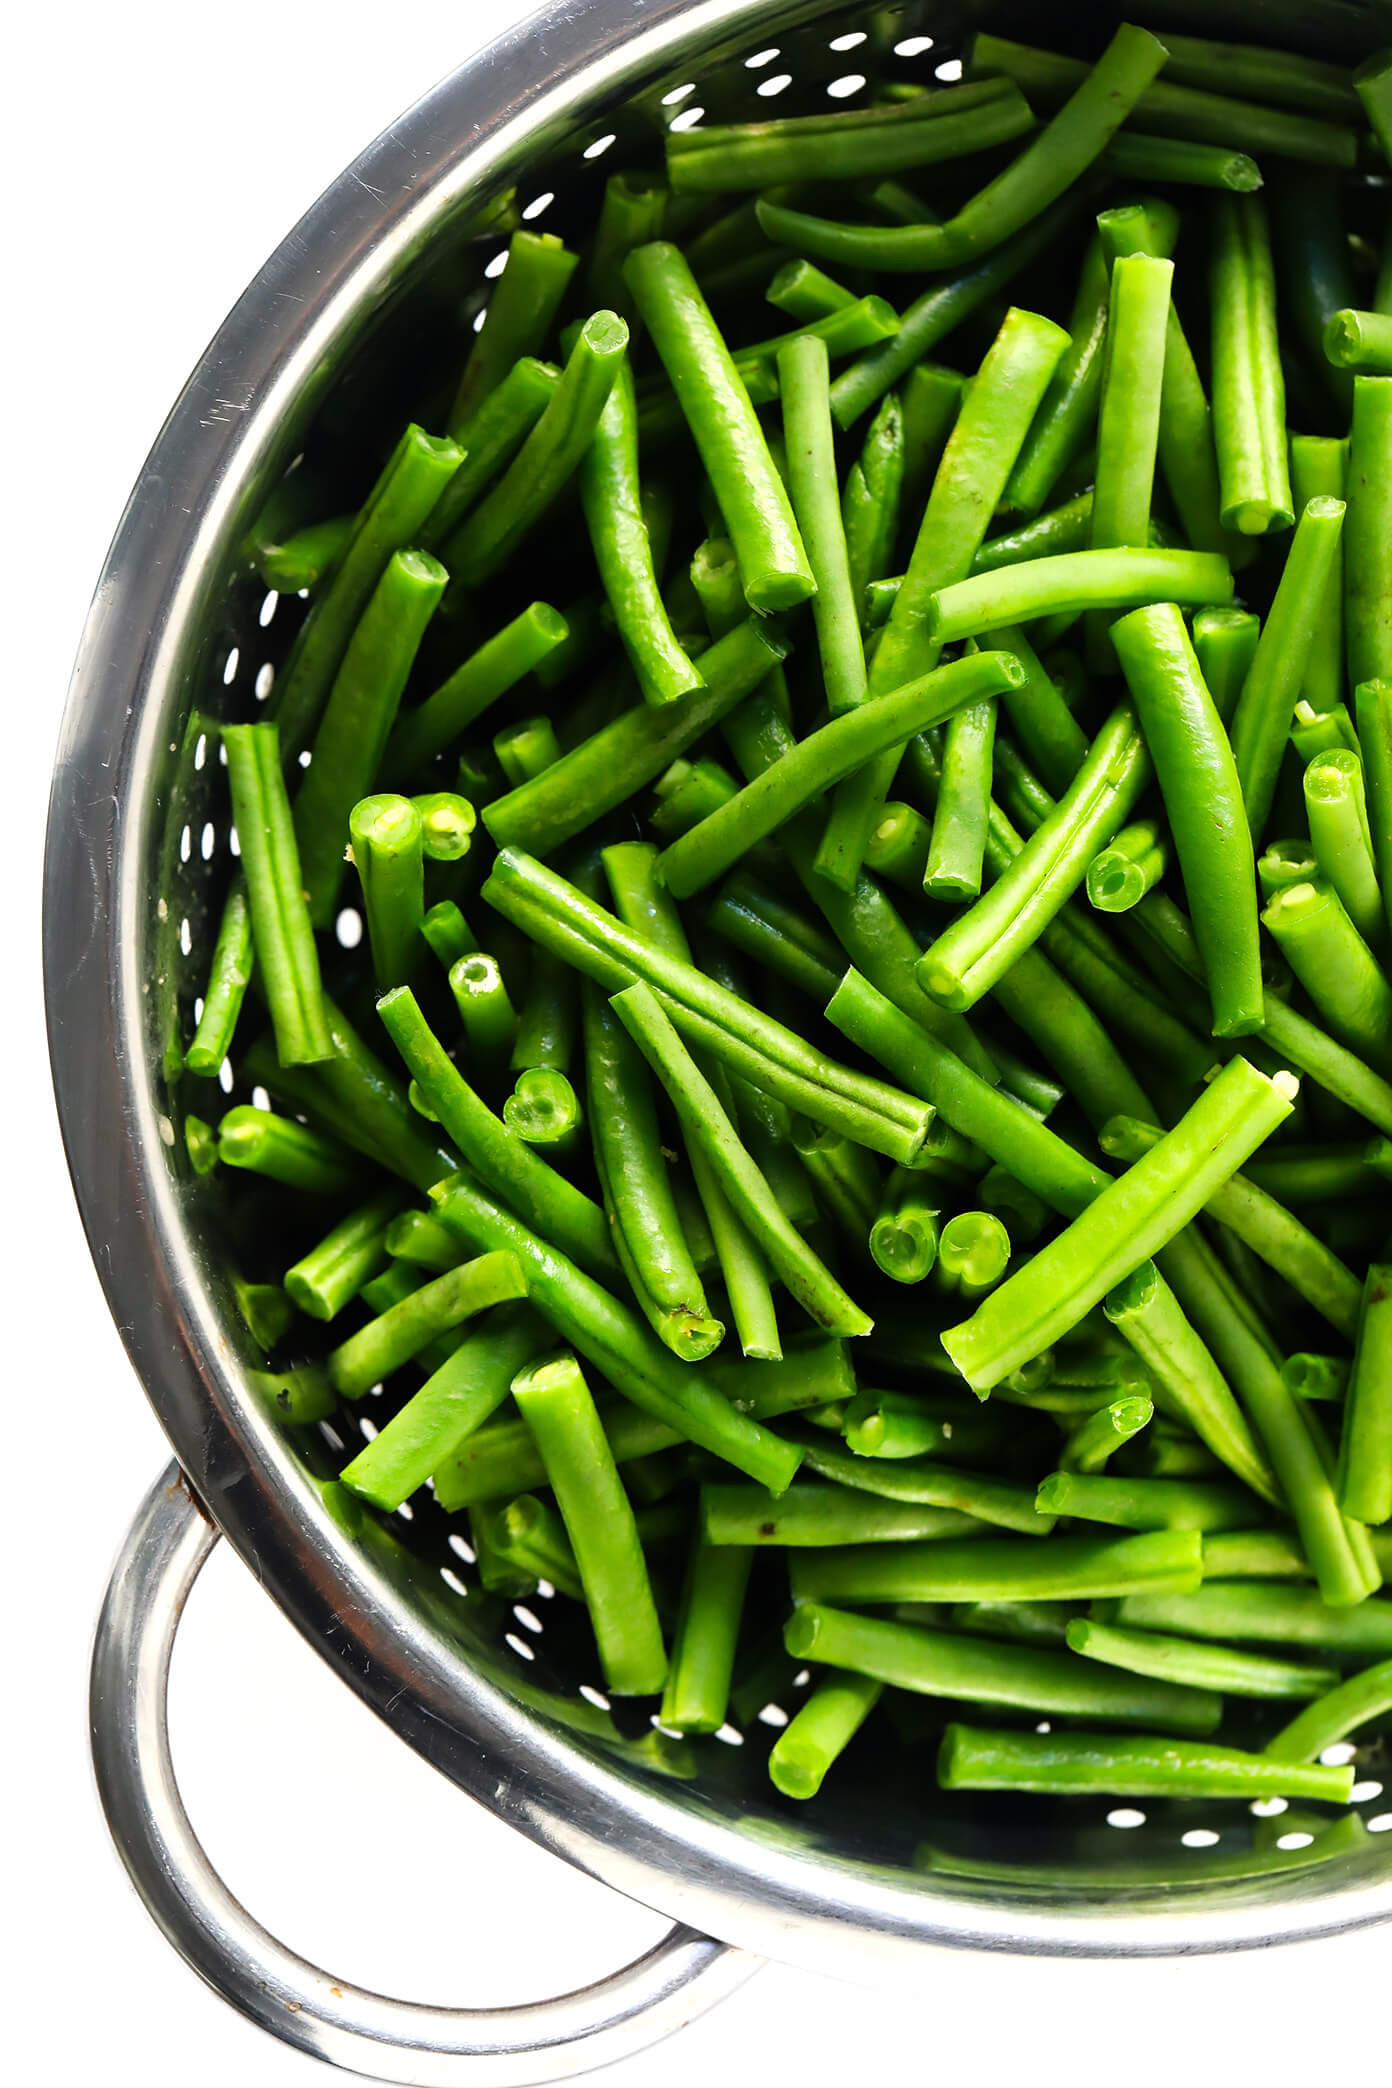 Green Bean Casserole Healthy
 Healthy Green Bean Casserole